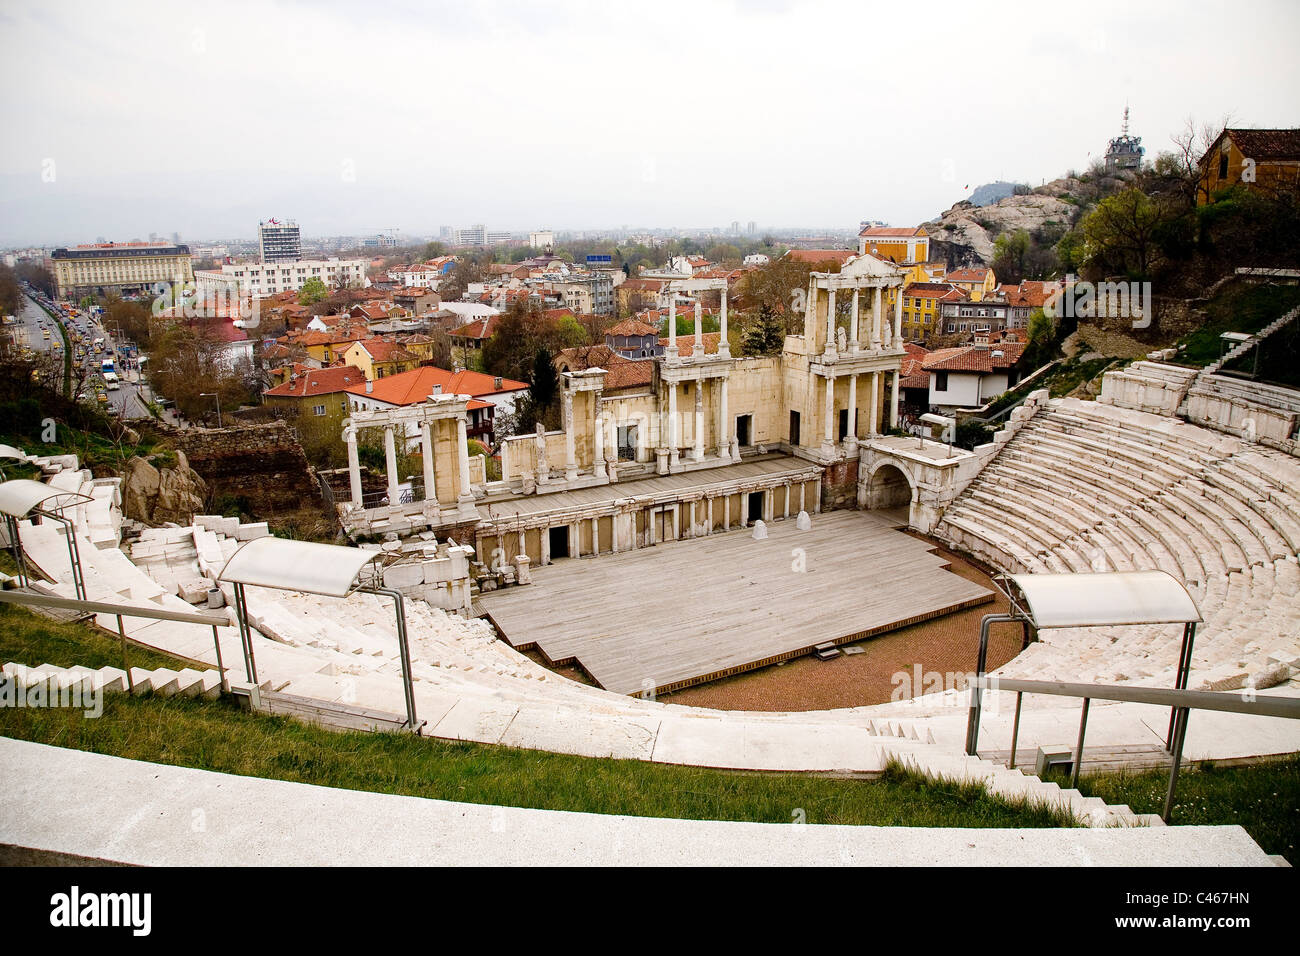 Photographie de l'ancien amphithéâtre romain de Plovdiv Bulgarie Banque D'Images